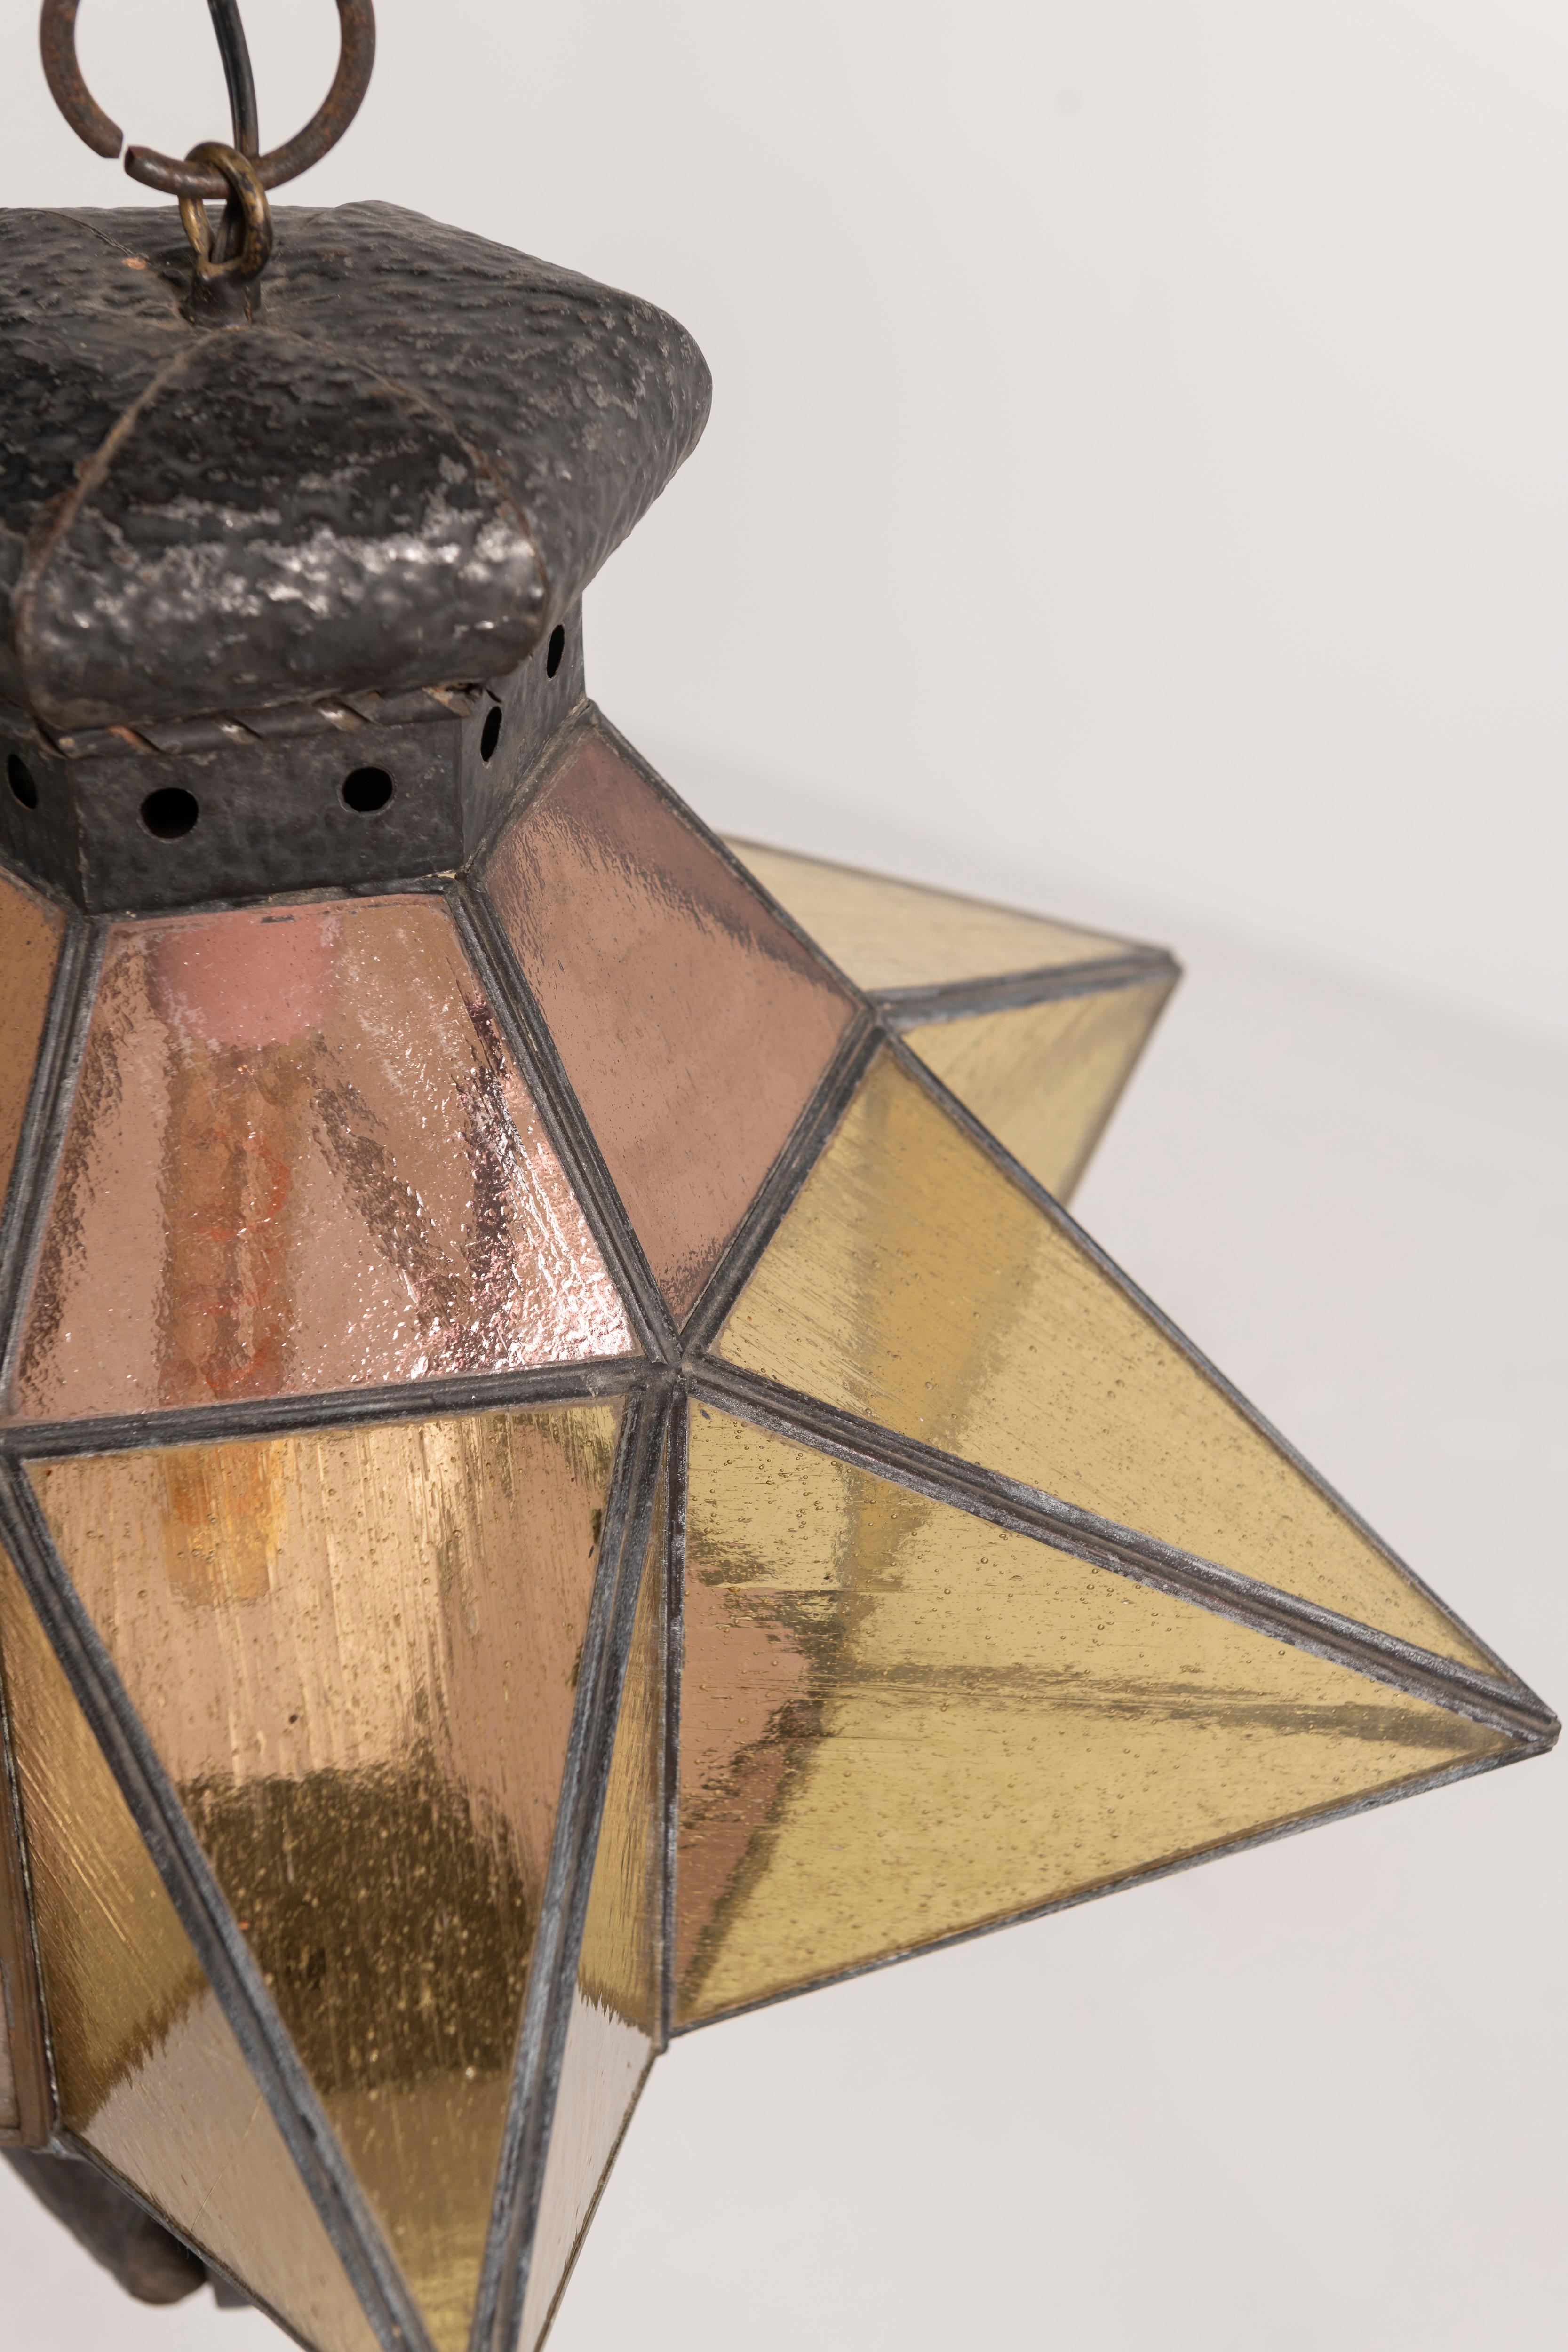 Ce remarquable pendentif marocain en forme d'étoile, fabriqué en fer forgé et en verre soufflé, fusionne les techniques artisanales traditionnelles avec une esthétique moderne. La lampe crée une ambiance subtile avec des nuances douces et tamisées